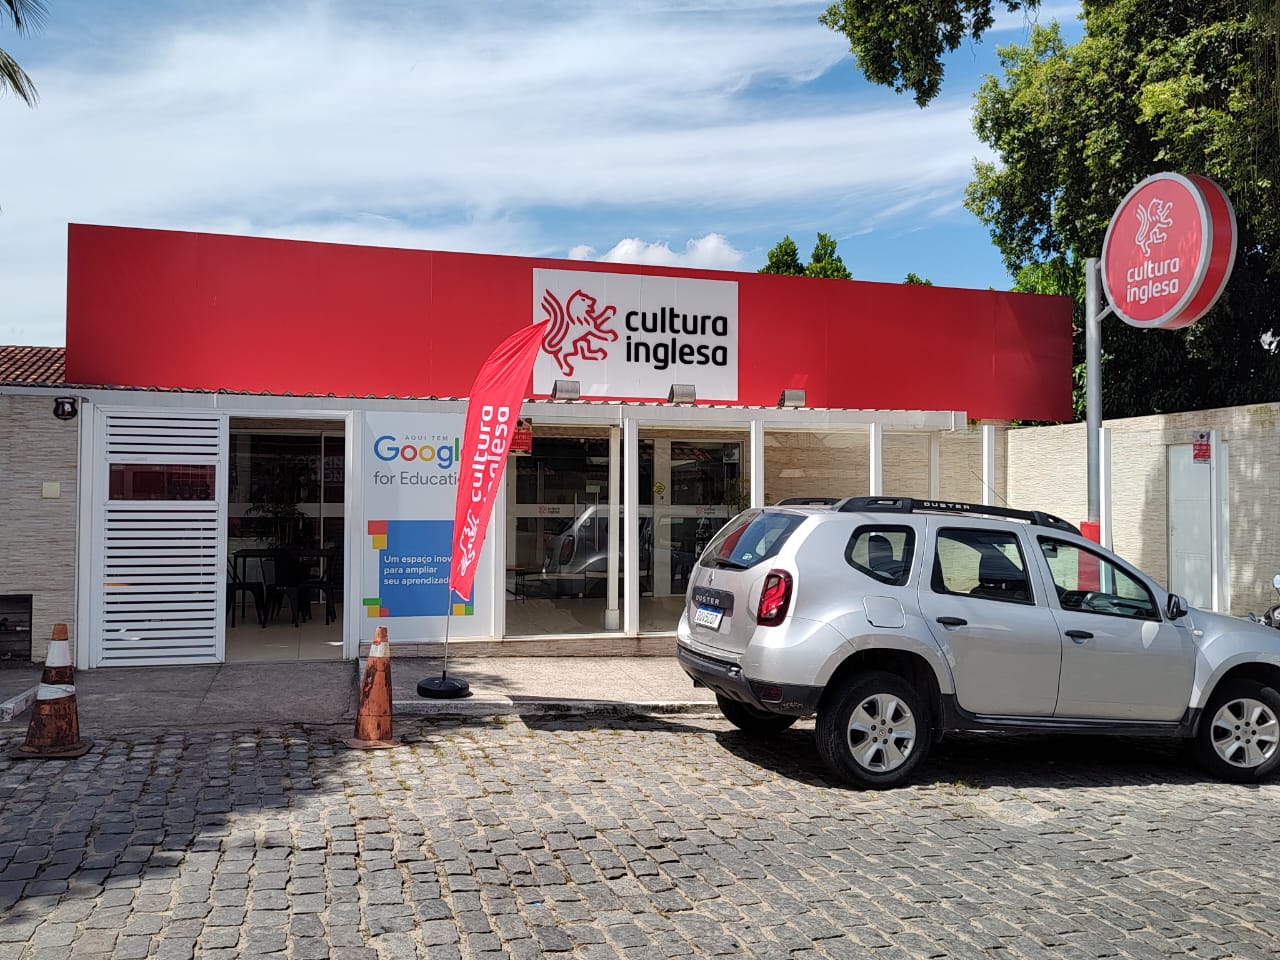 Fachada da Cultura Inglesa do Centro de Itaboraí, RJ